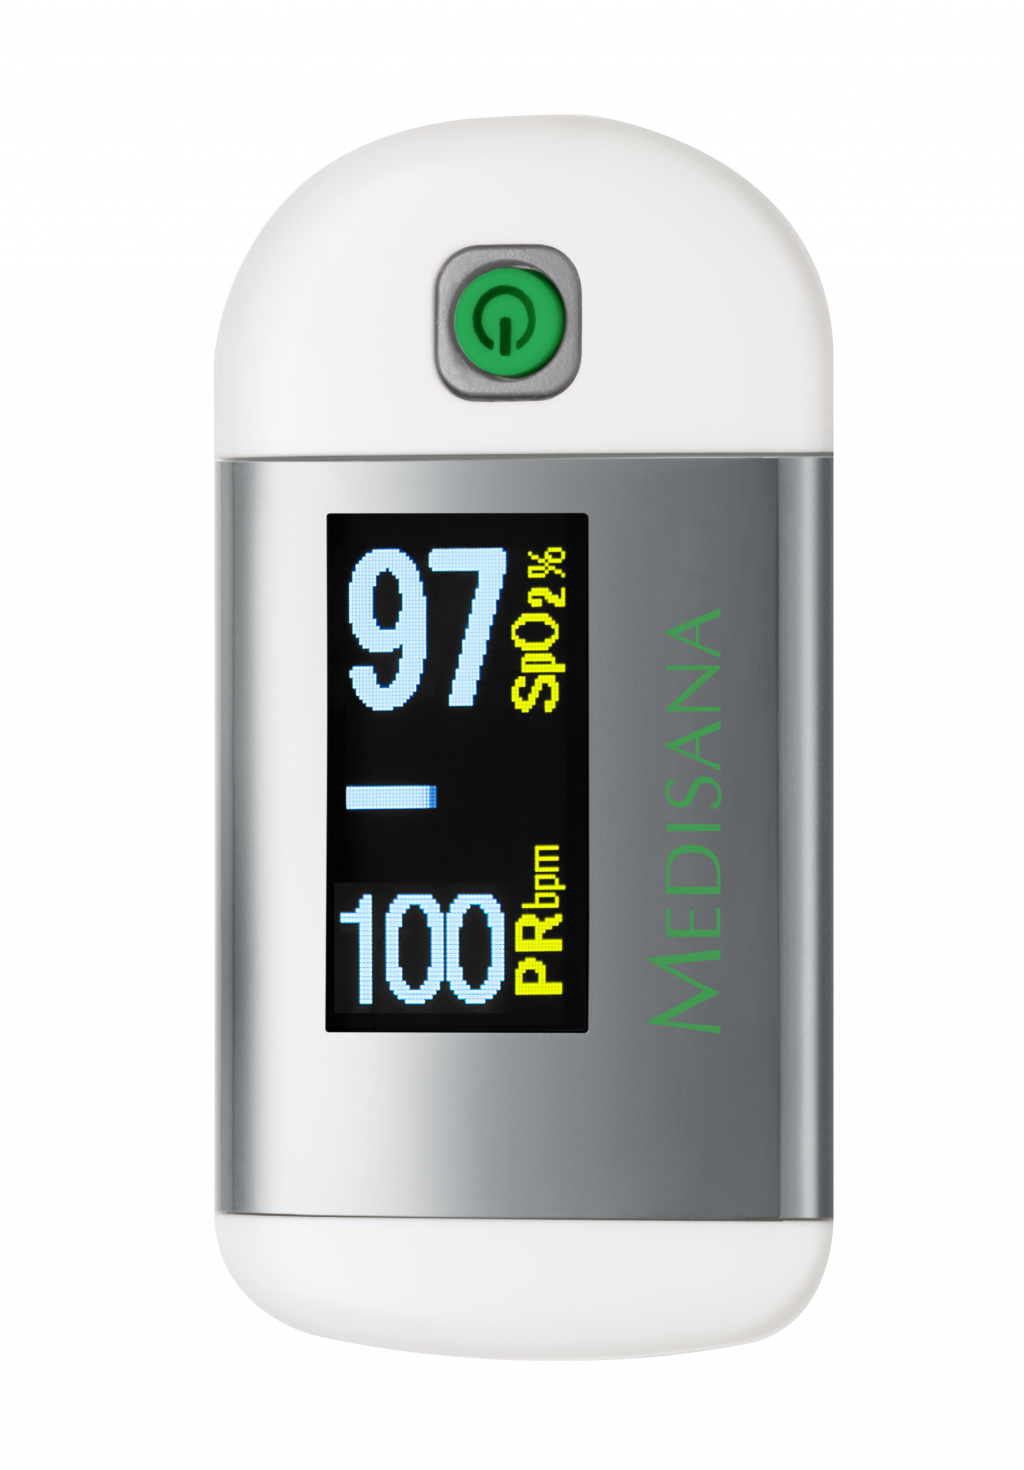 PM 100 Pulse Oximeter